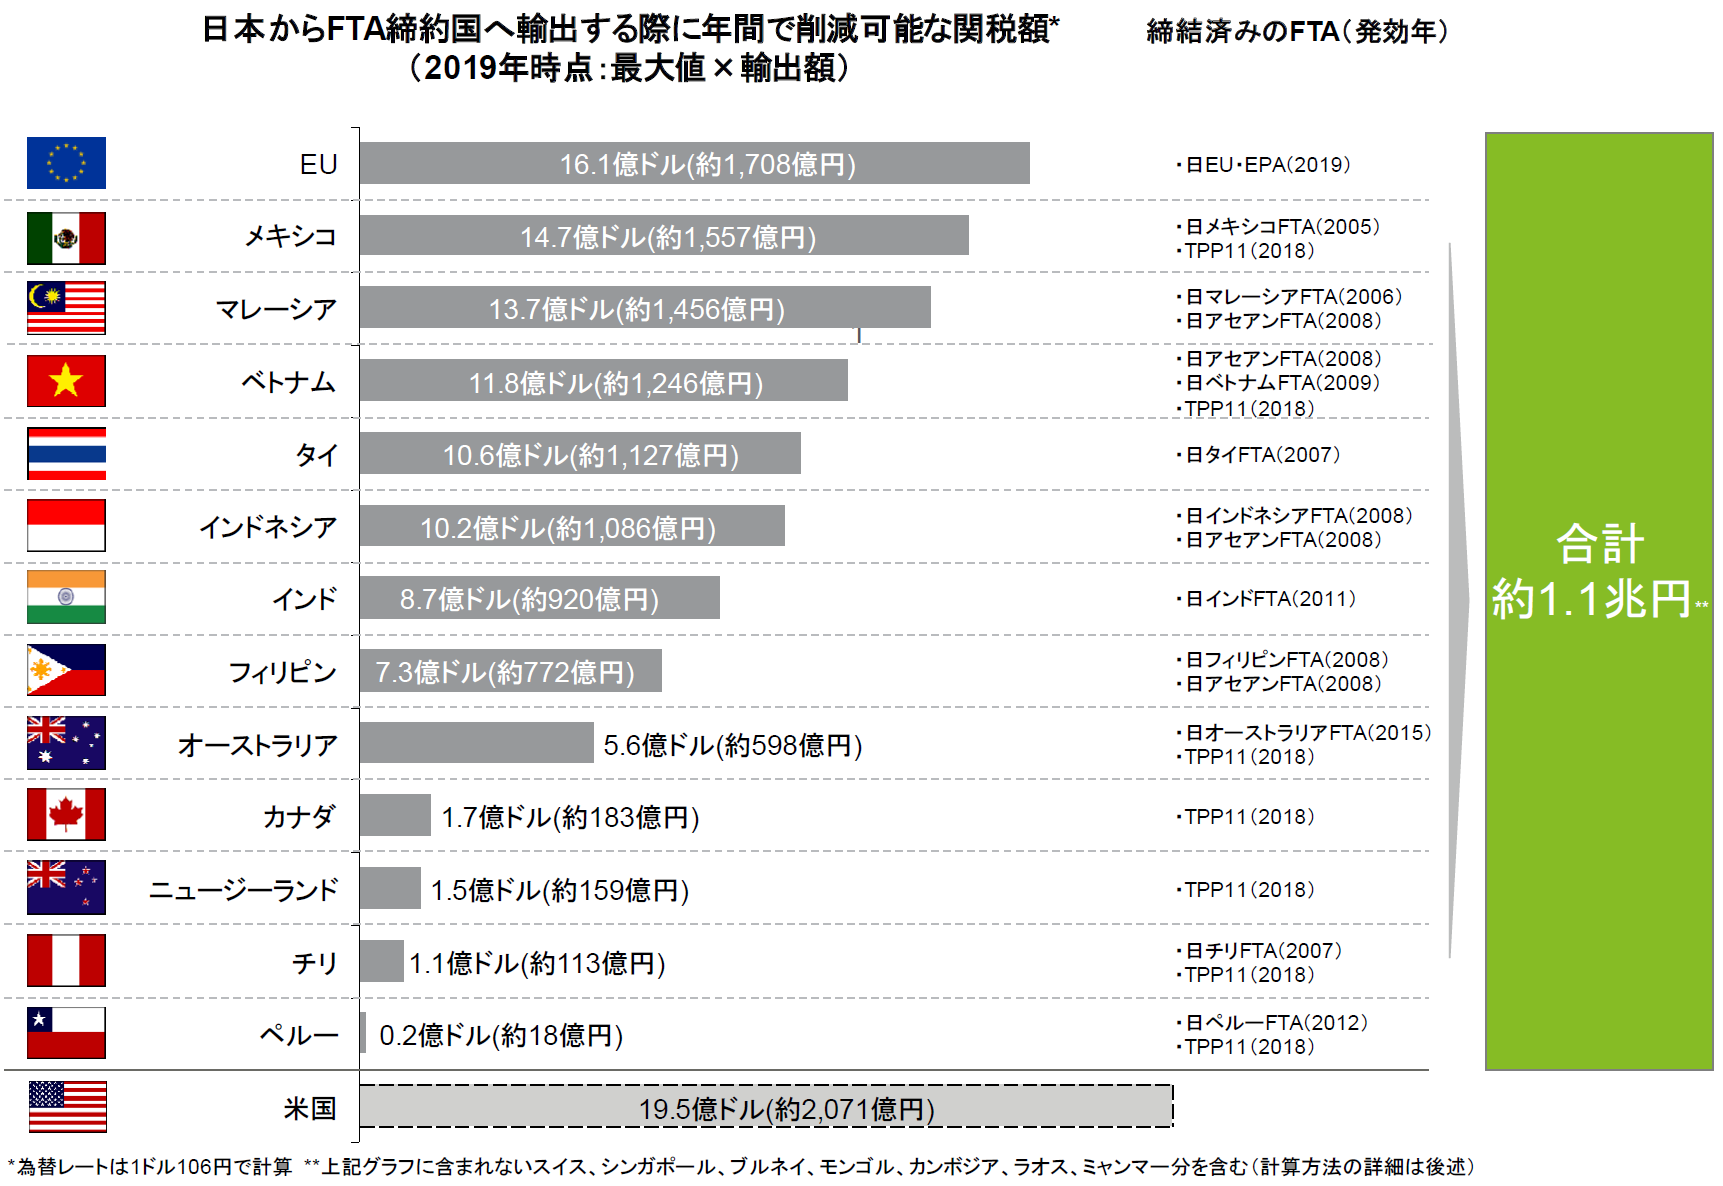 日本からFTA締結国へ輸出する際に年間で削減可能な関税額